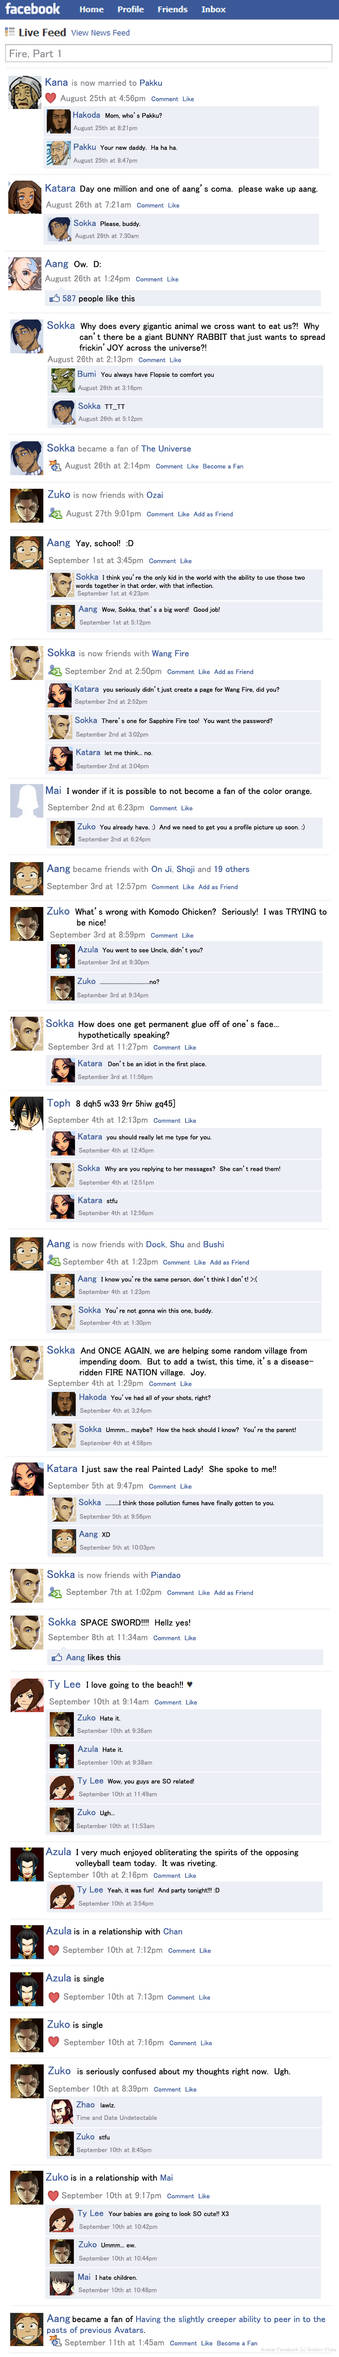 Avatar Facebook Fire Part 1